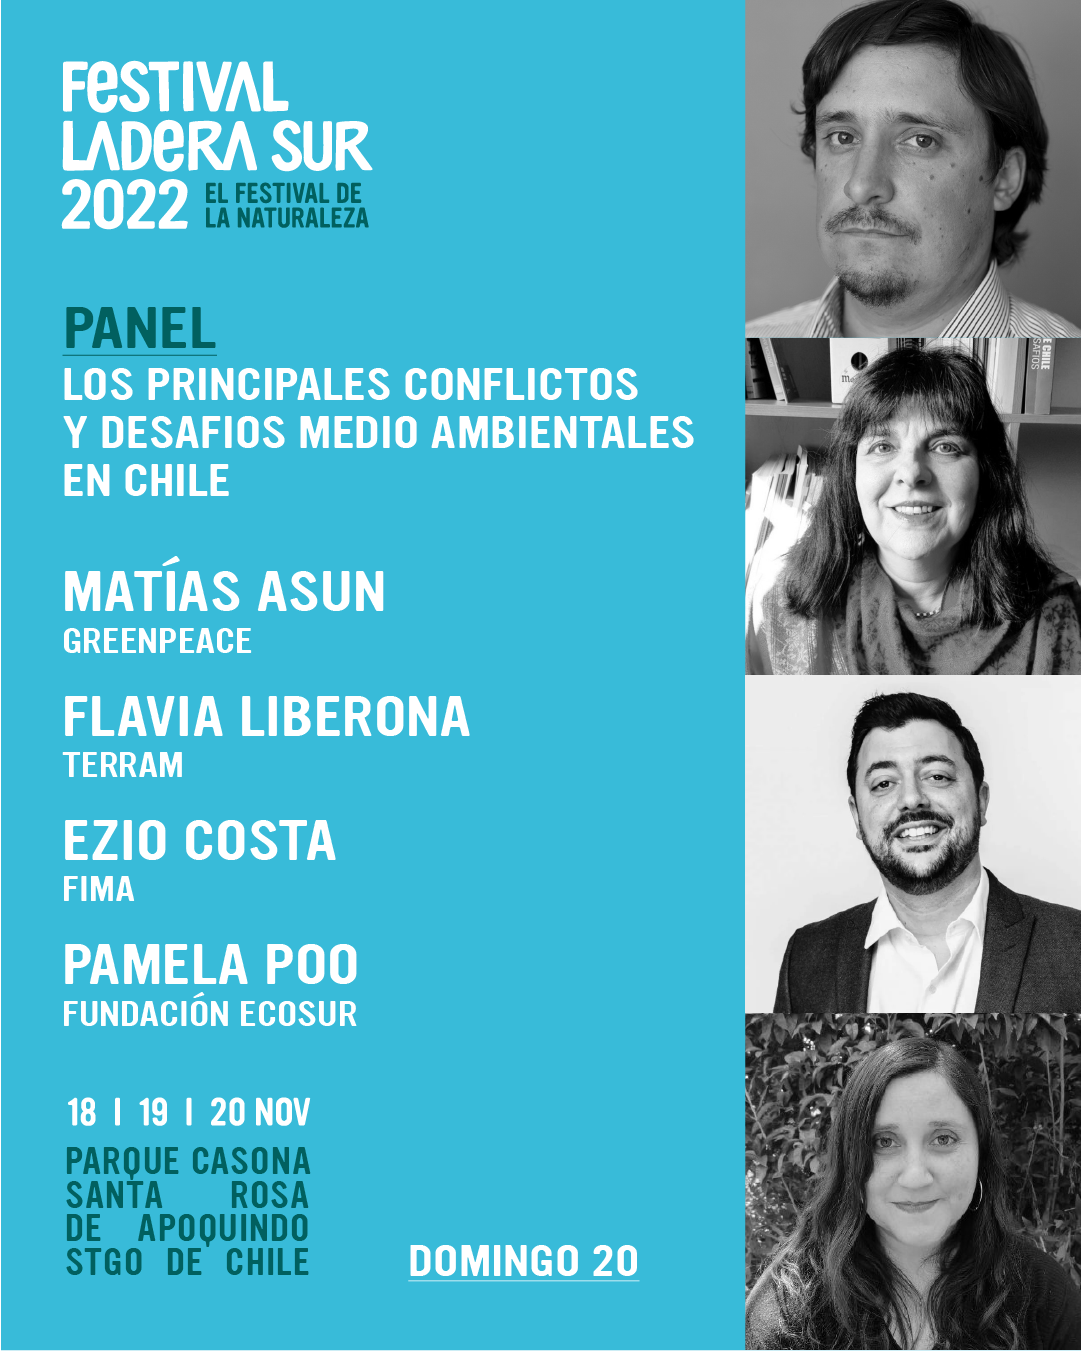 Festival Ladera Sur: Panel “Los principales conflictos y desafíos medio ambientales en Chile”